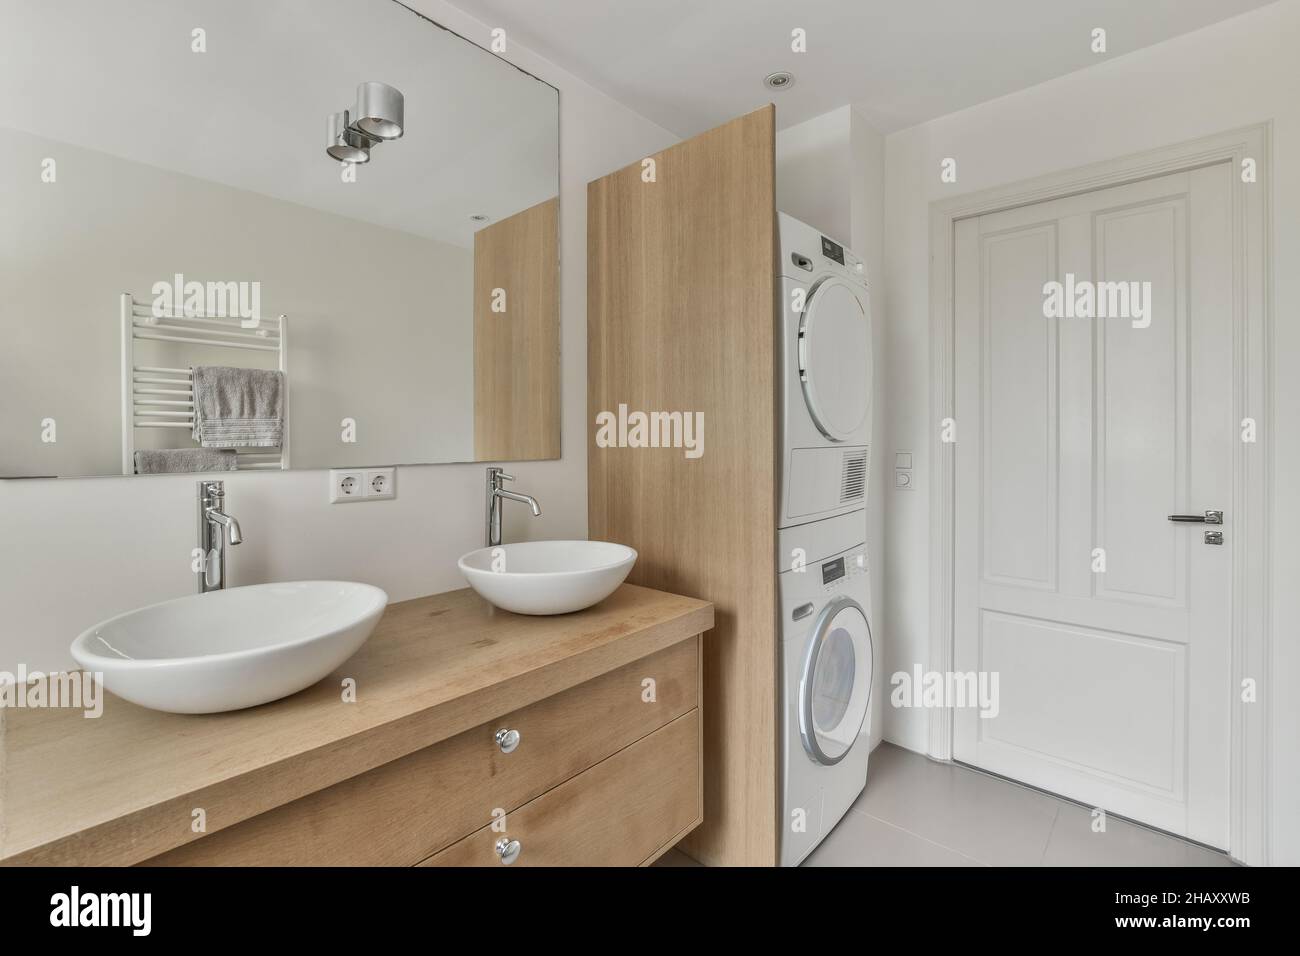 Armoire en bois avec double vasque lavabos au mur avec miroir dans la salle  de bains moderne lumineuse avec lave-linge contemporain près de porte  fermée Photo Stock - Alamy